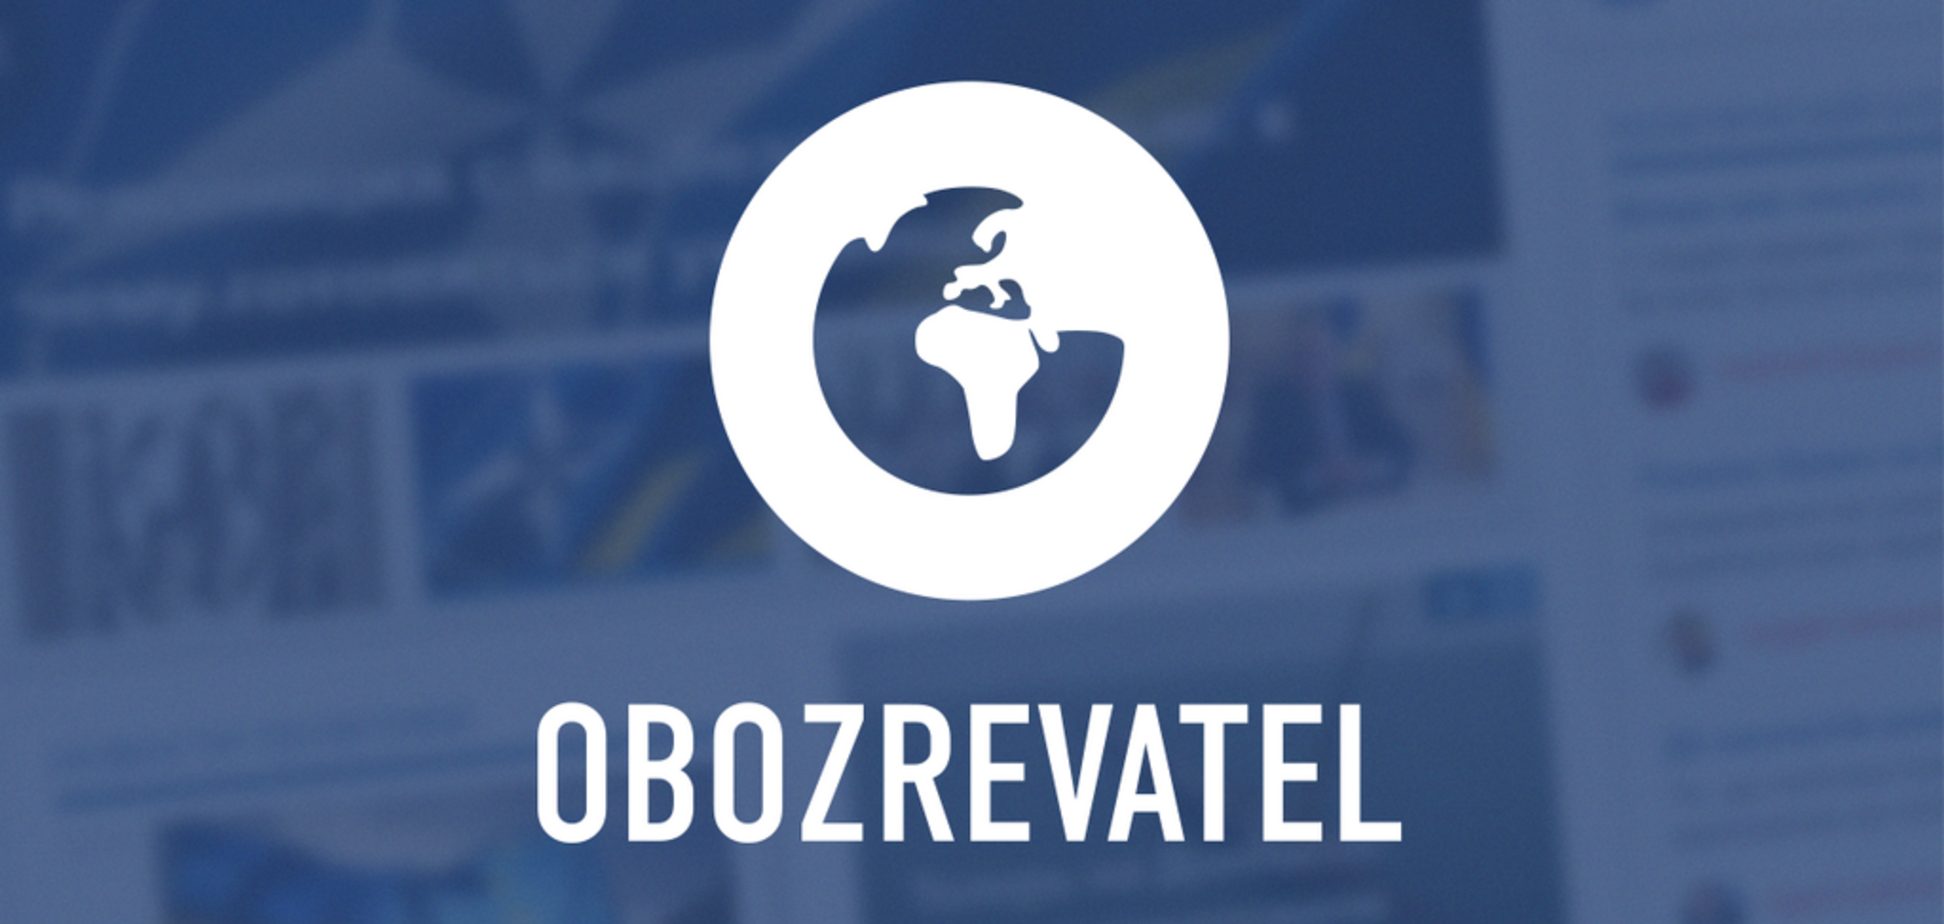 Читаешь новости — получаешь смартчасы: на OBOZREVATEL стартовал новый розыгрыш